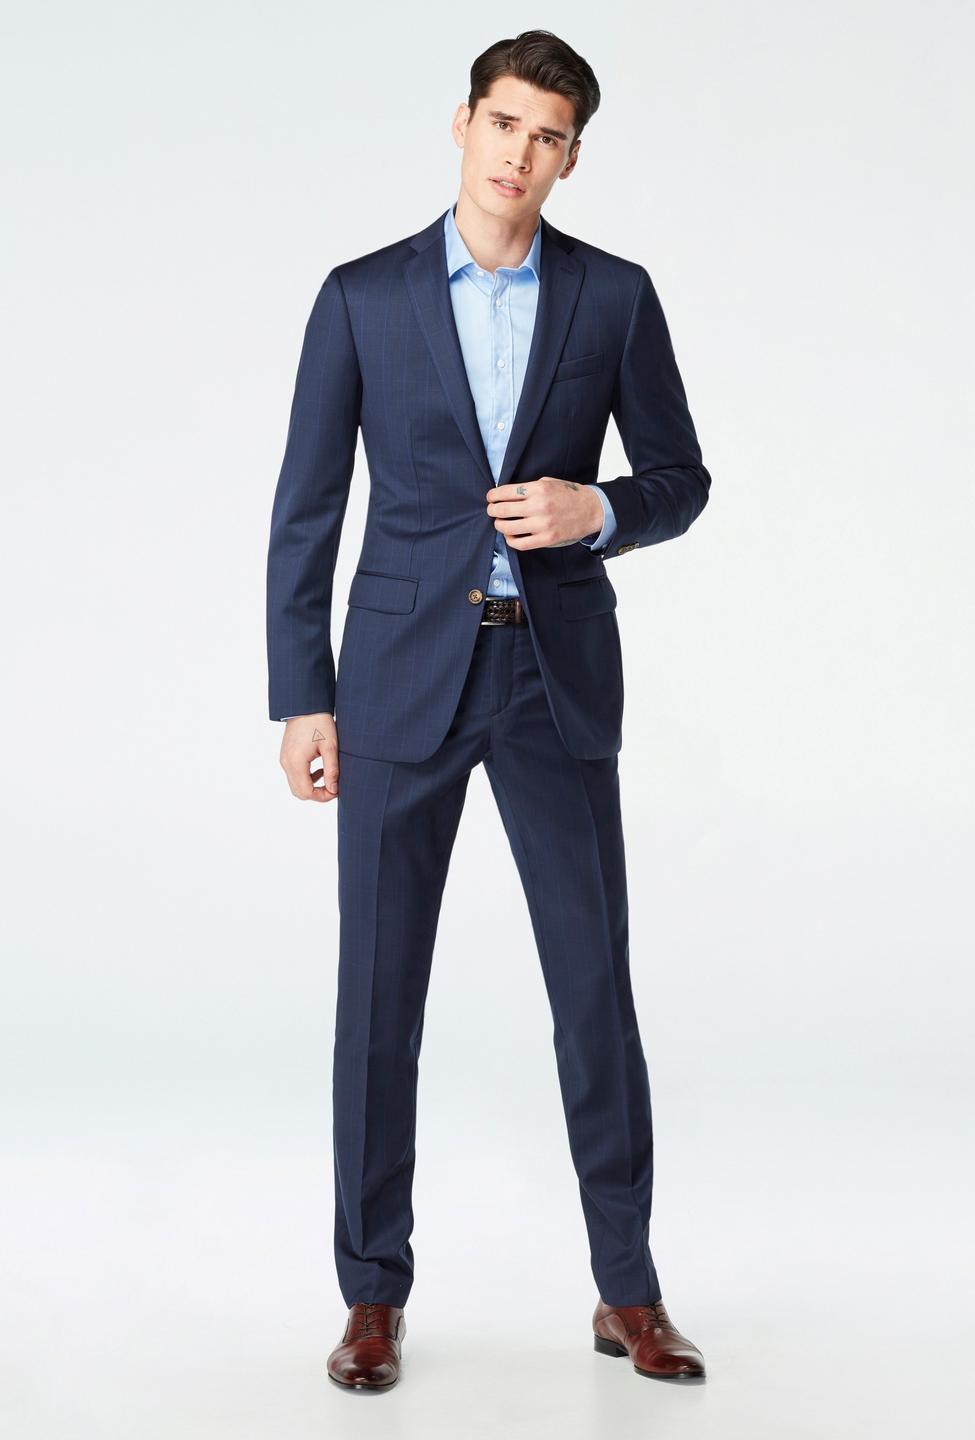 Blue blazer - Hemsworth Plaid Design from Premium Indochino Collection